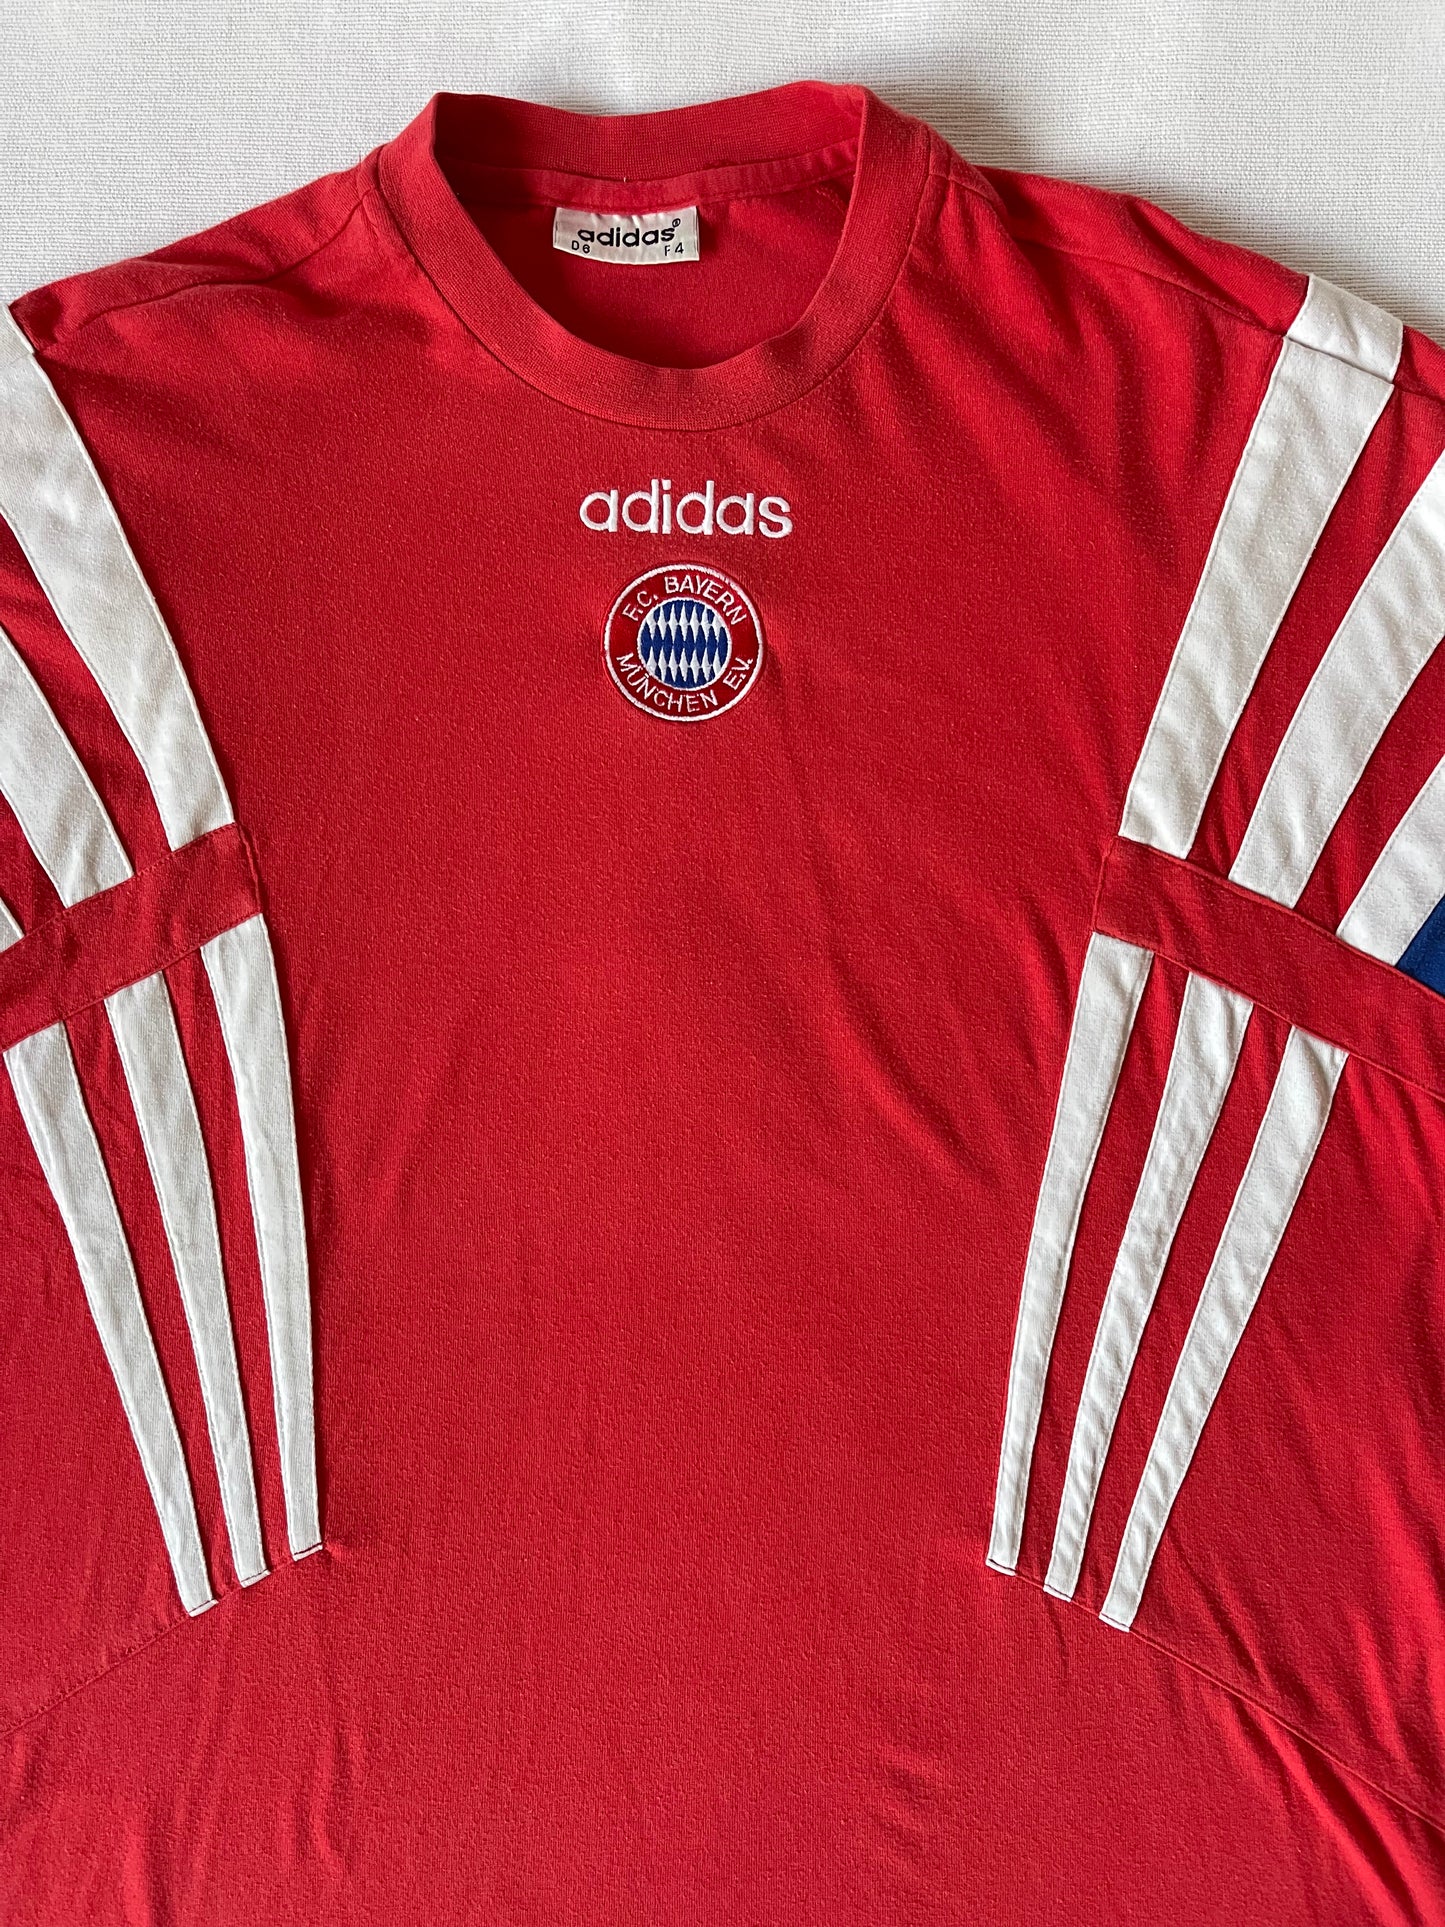 Bayern München Munich Adidas 1995 1996 1997 1998 Training Shirt / Jersey / Leisure T-Shirt Football Size M